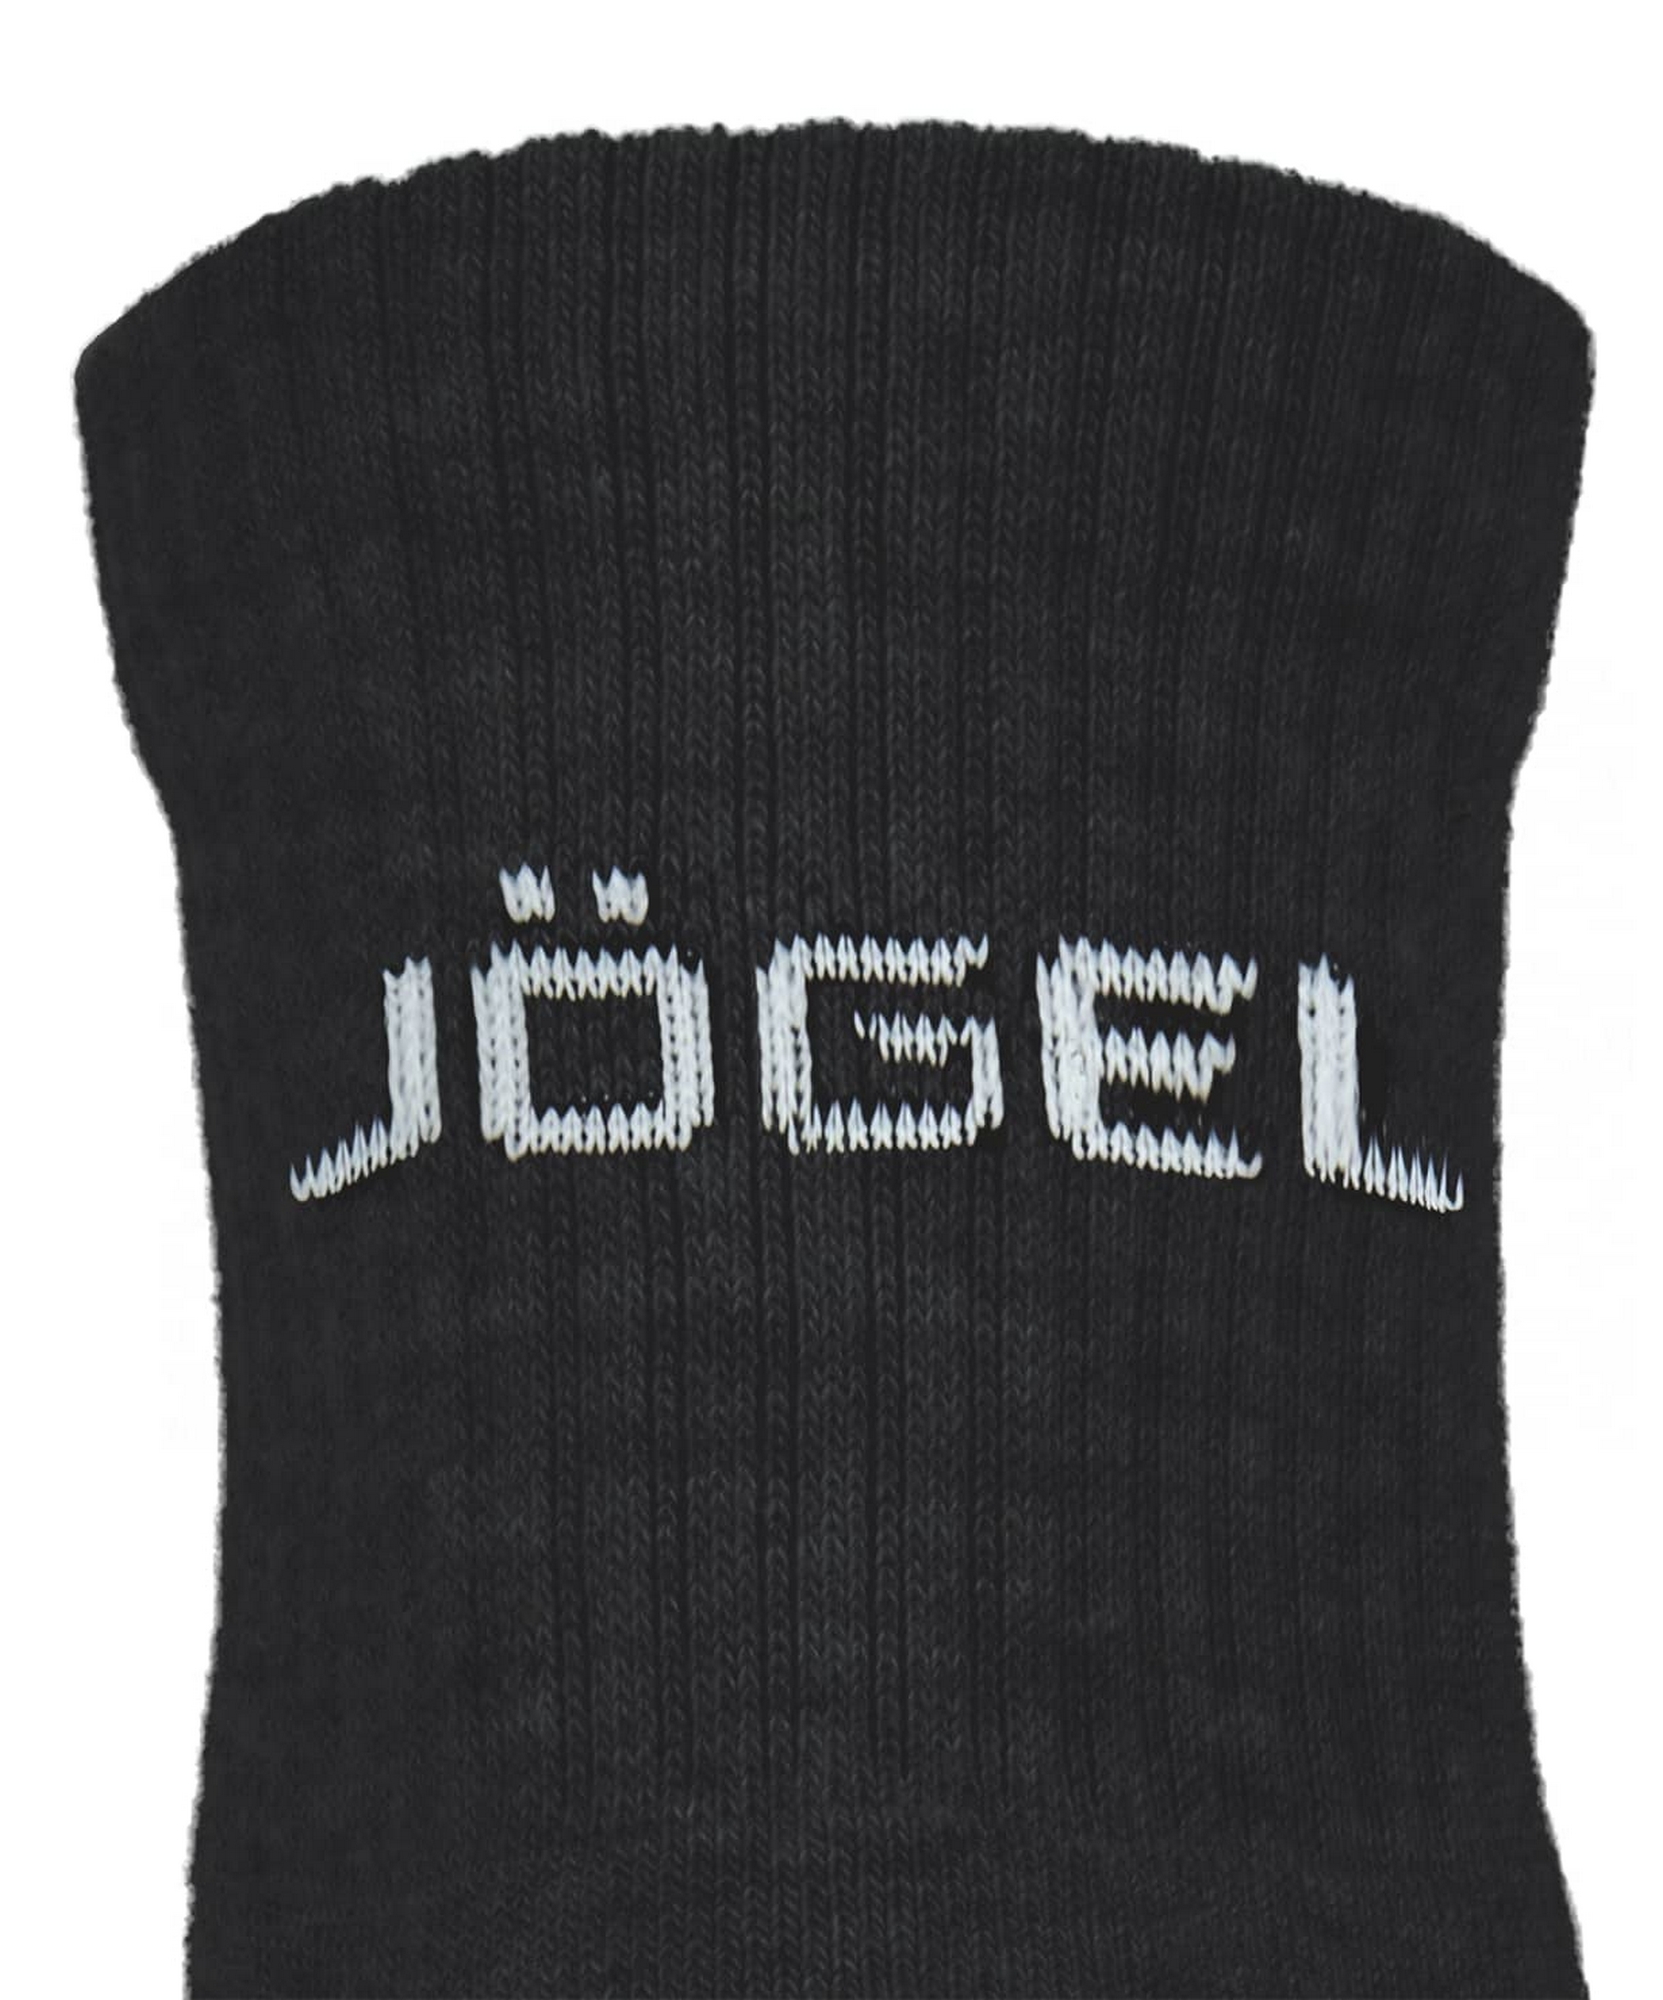 Носки средние Jogel ESSENTIAL Mid Cushioned Socks черный 1663_2000